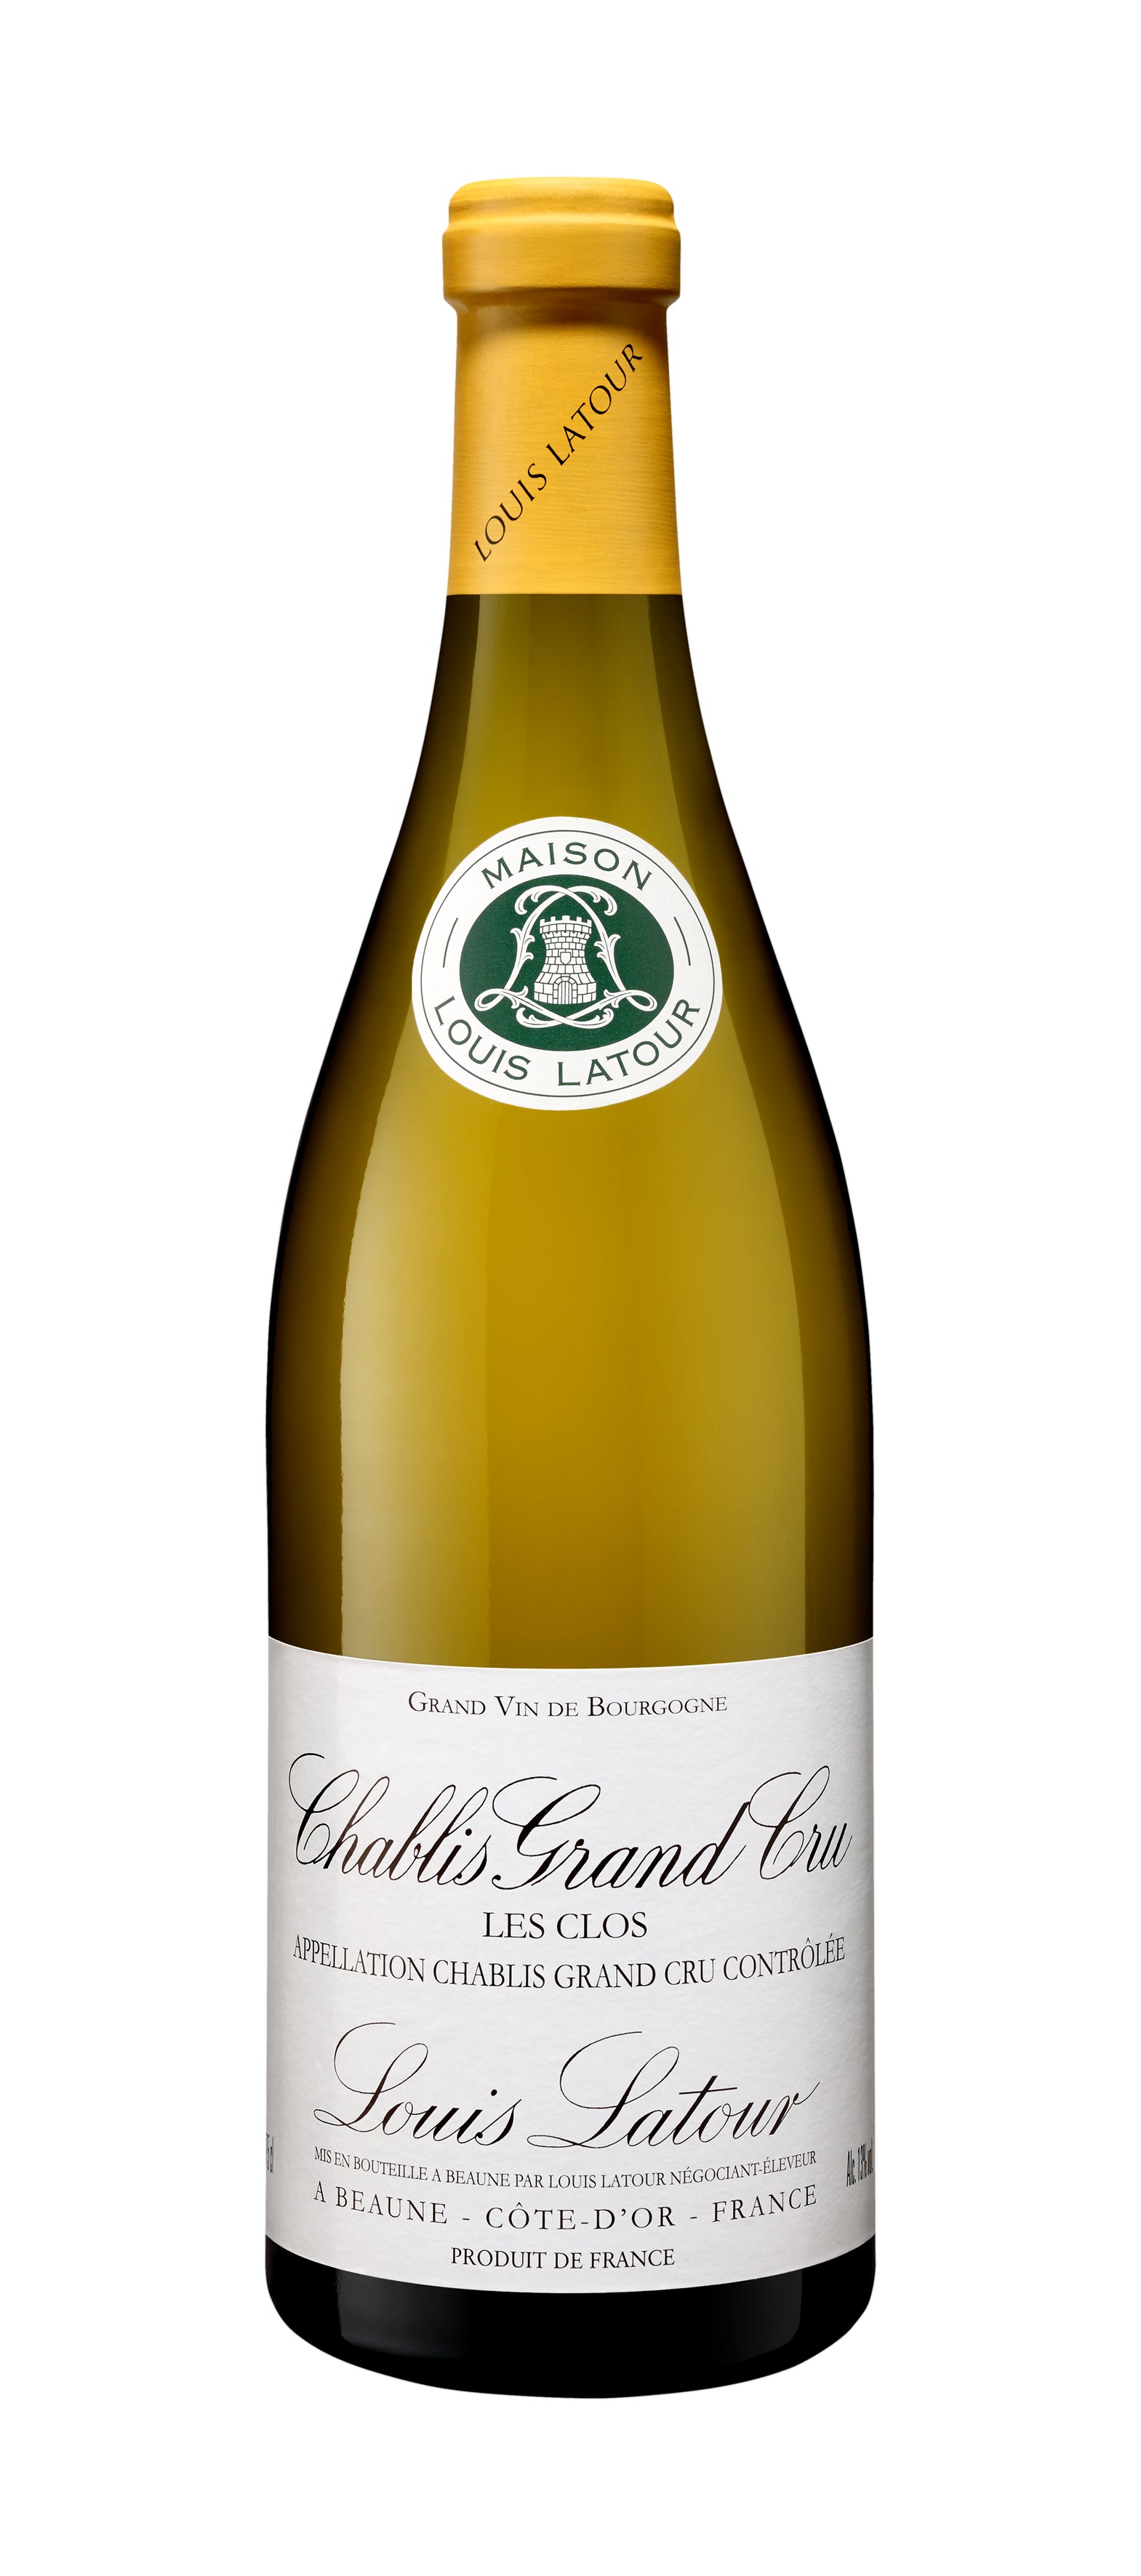 Wine Vins Louis Latour Chablis Grand Cru Les Clos Branco